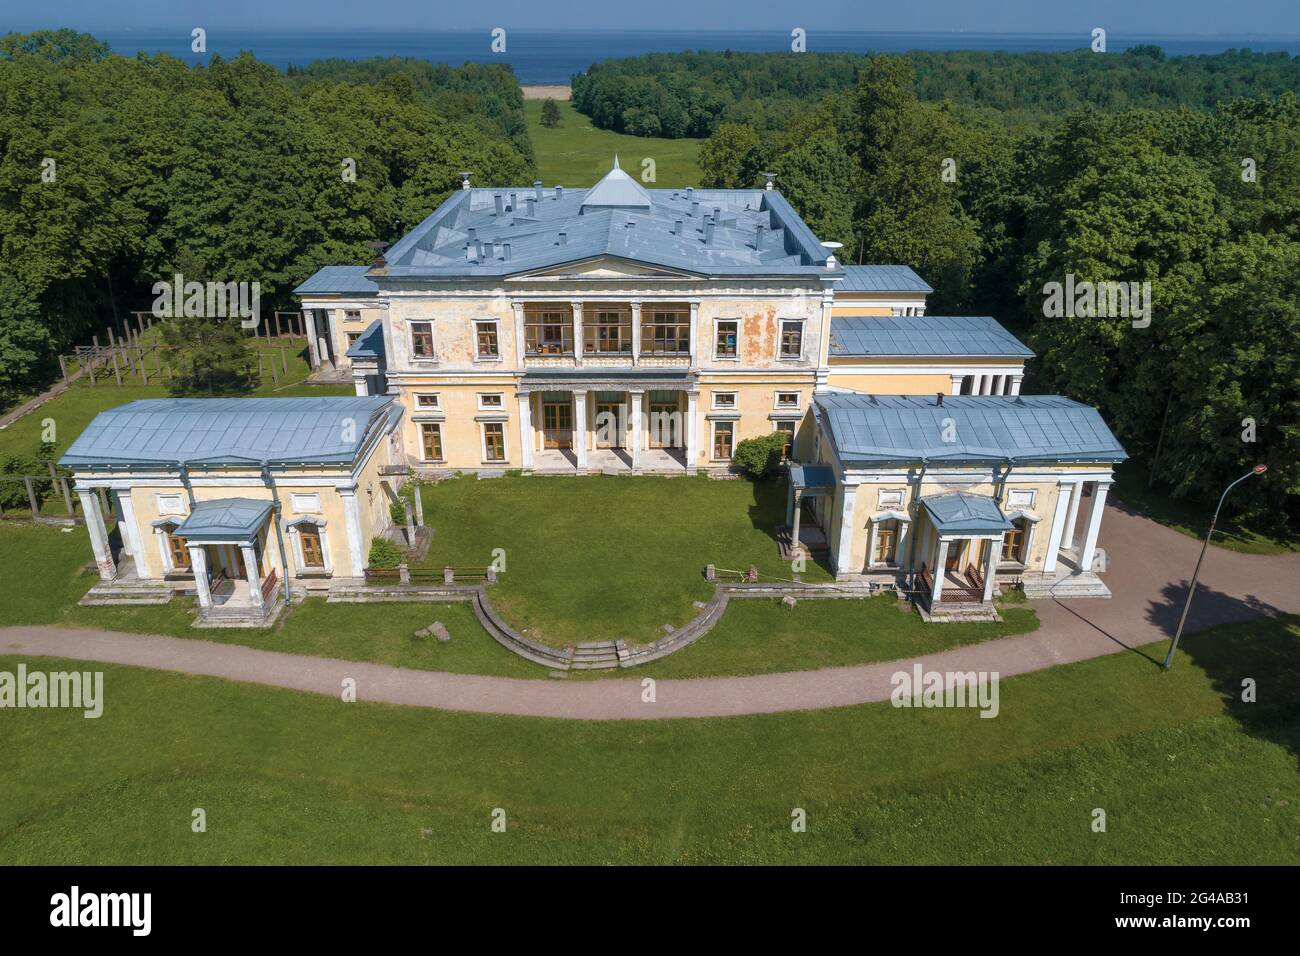 PETERHOF, RUSSIE - 02 DÉCEMBRE 2019 : l'ancien palais des ducs de Leuchtenberg dans le domaine de 'Mergievka', le jour de juin ensoleillé. Stary Peterhof Banque D'Images